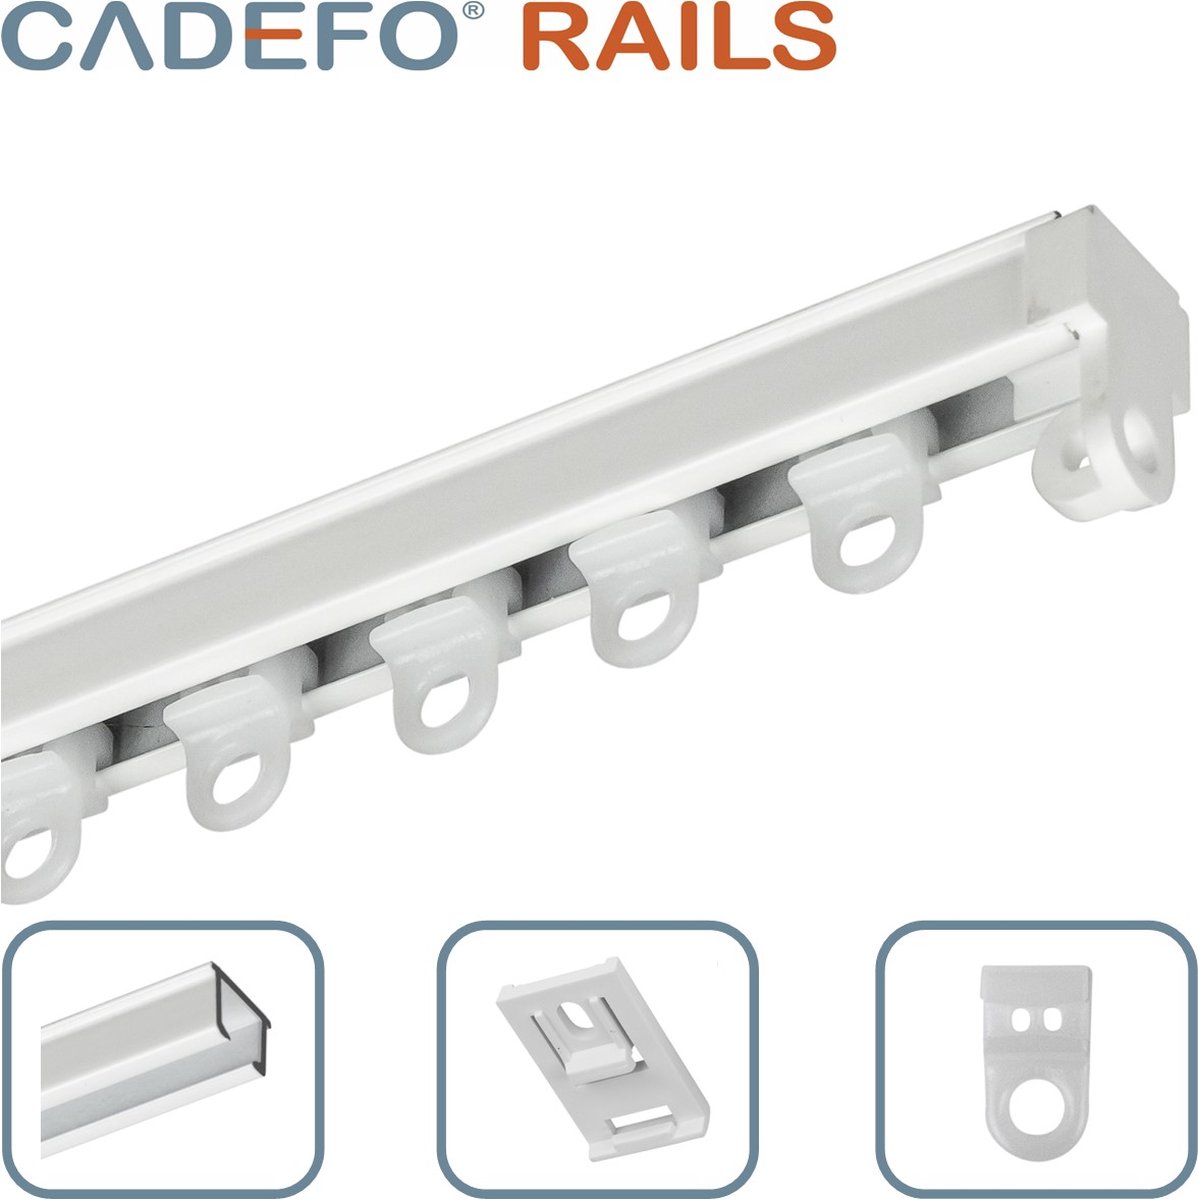 CADEFO RAILS (201 - 250 cm) Gordijnrails - Compleet op maat! - UIT 1 STUK - Leverbaar tot 6 meter - Plafondbevestiging - Lengte 246 cm